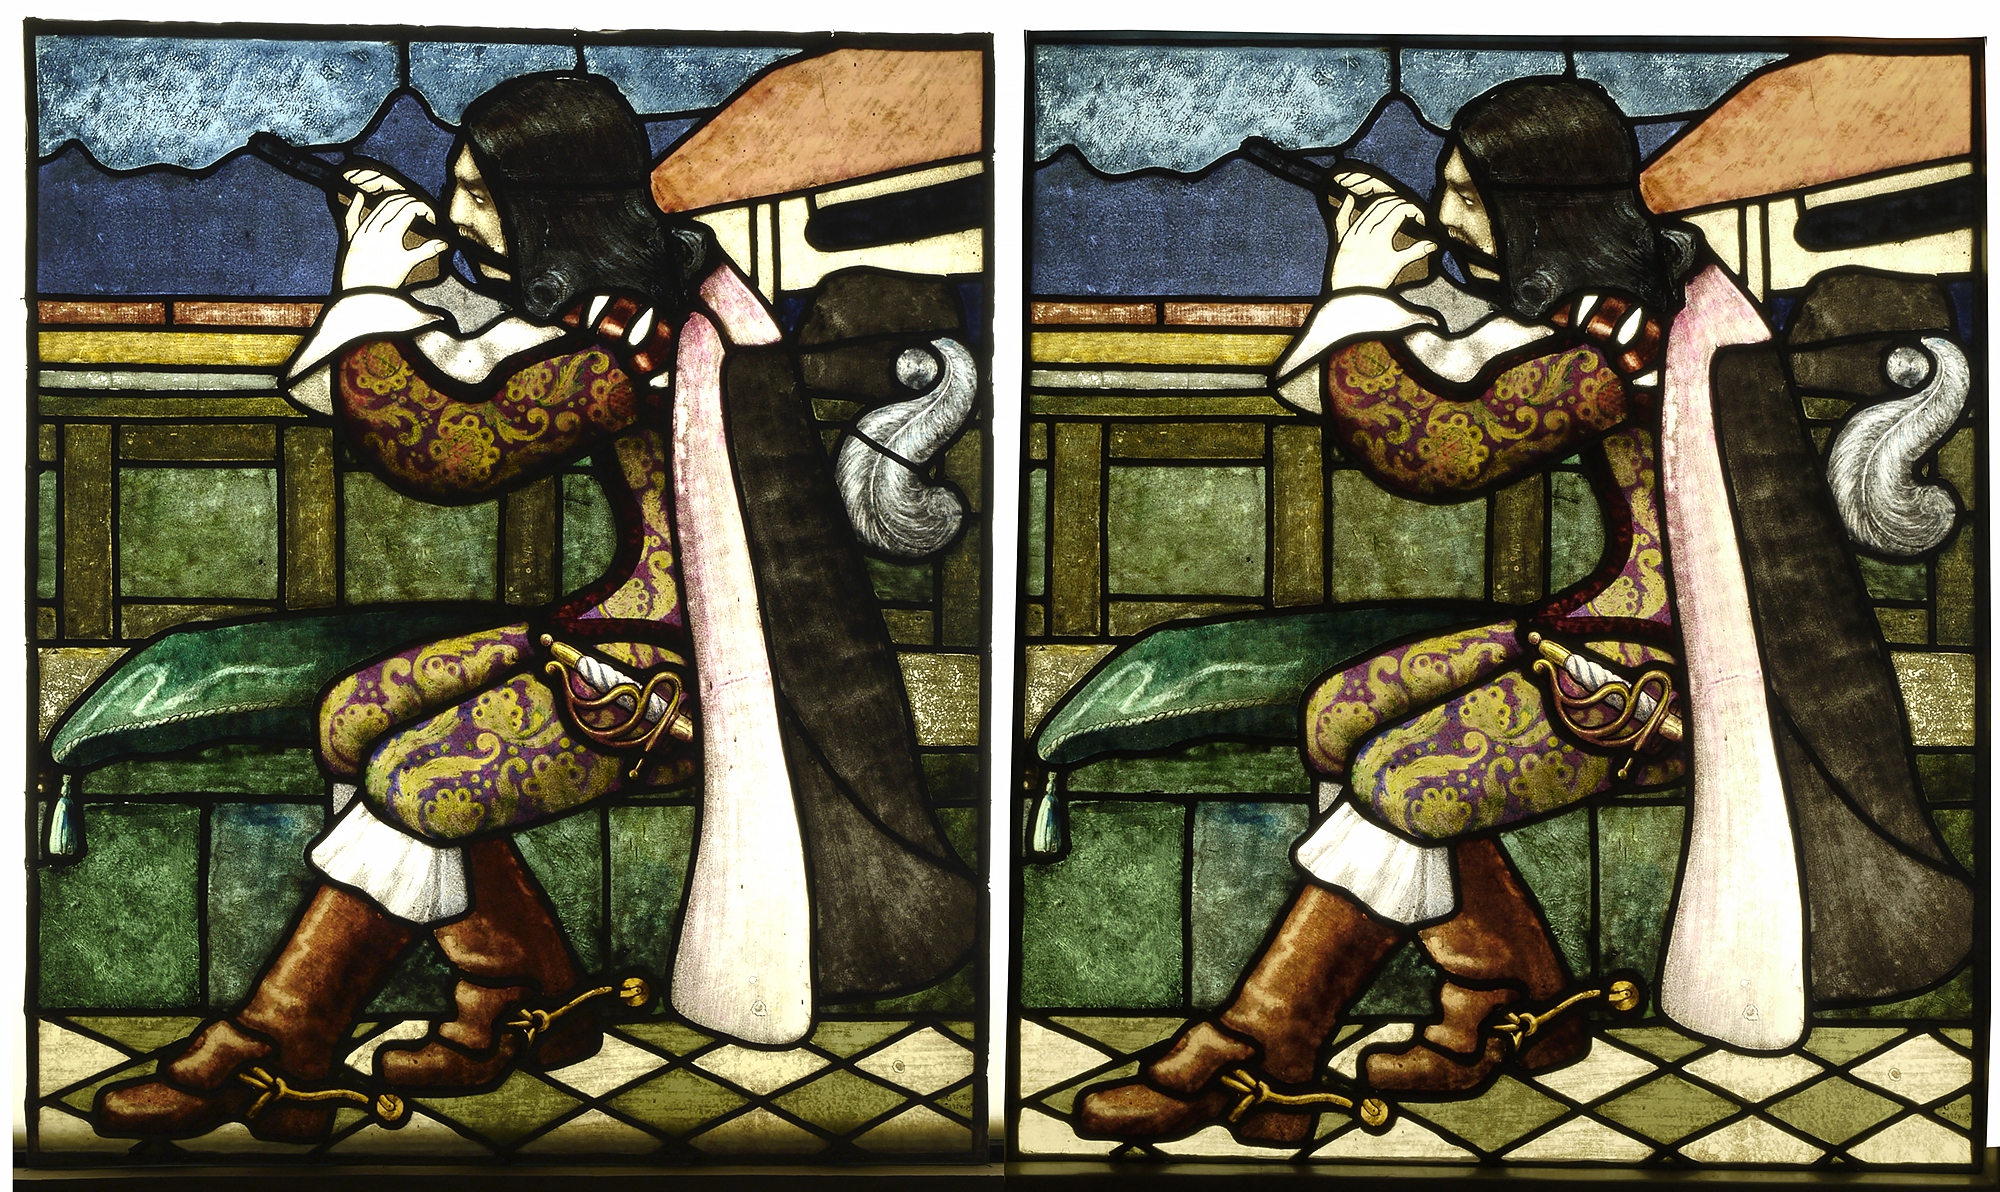 Kaksi rinnakkaista kuvaa samasta yksityiskohdasta, jossa mies istuu penkillä soittamassa huilua.